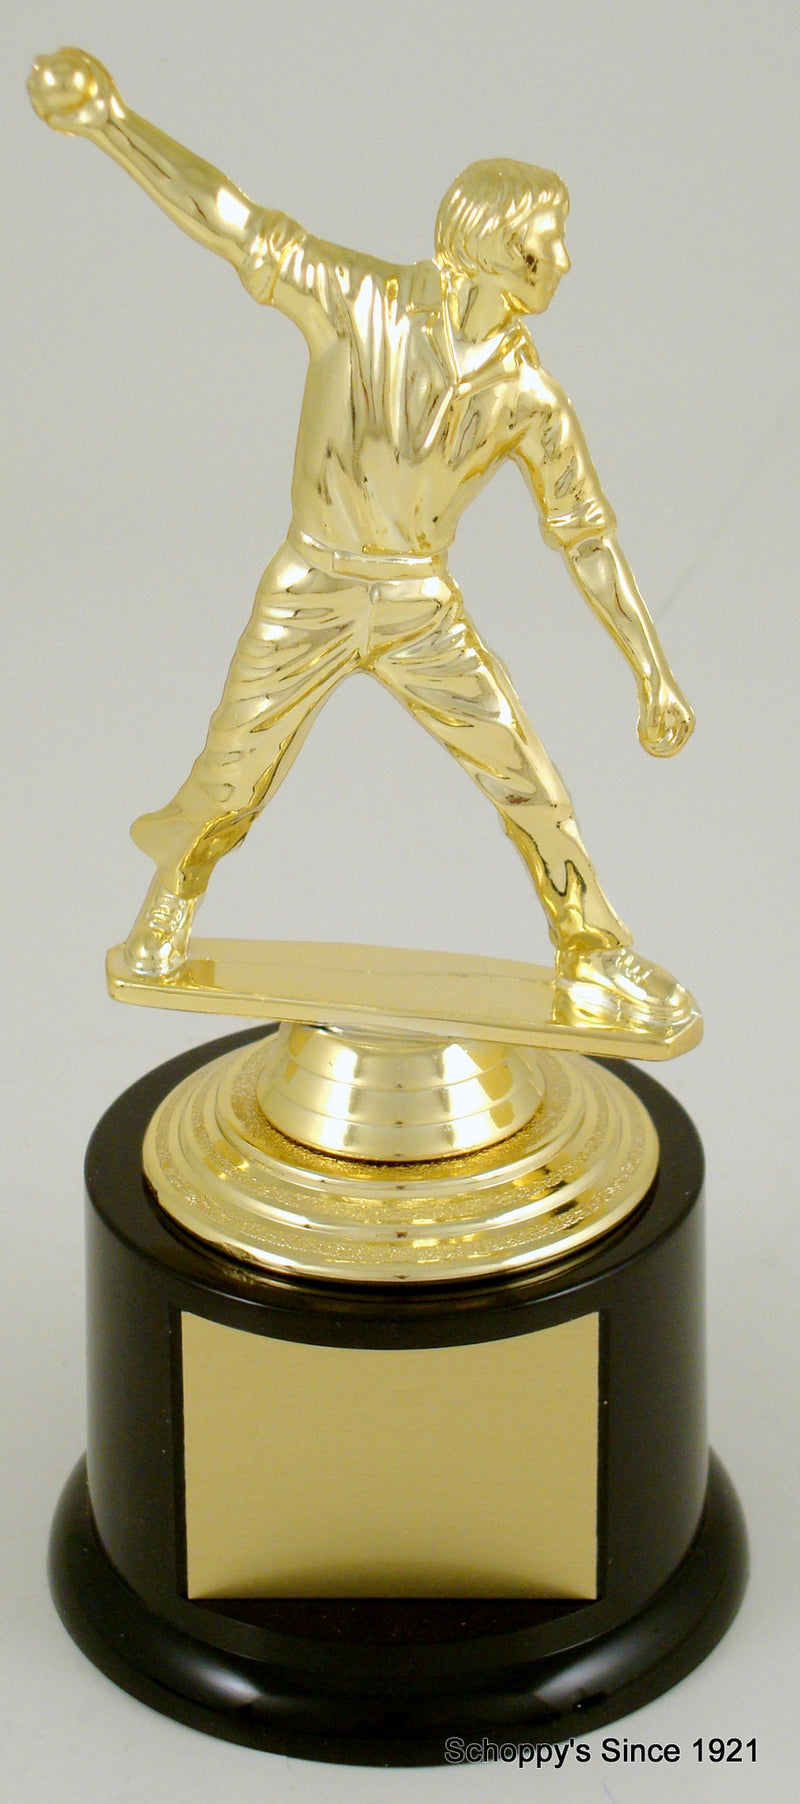 Cricket Player Trophy On Medium Black Round Base-Trophy-Schoppy&